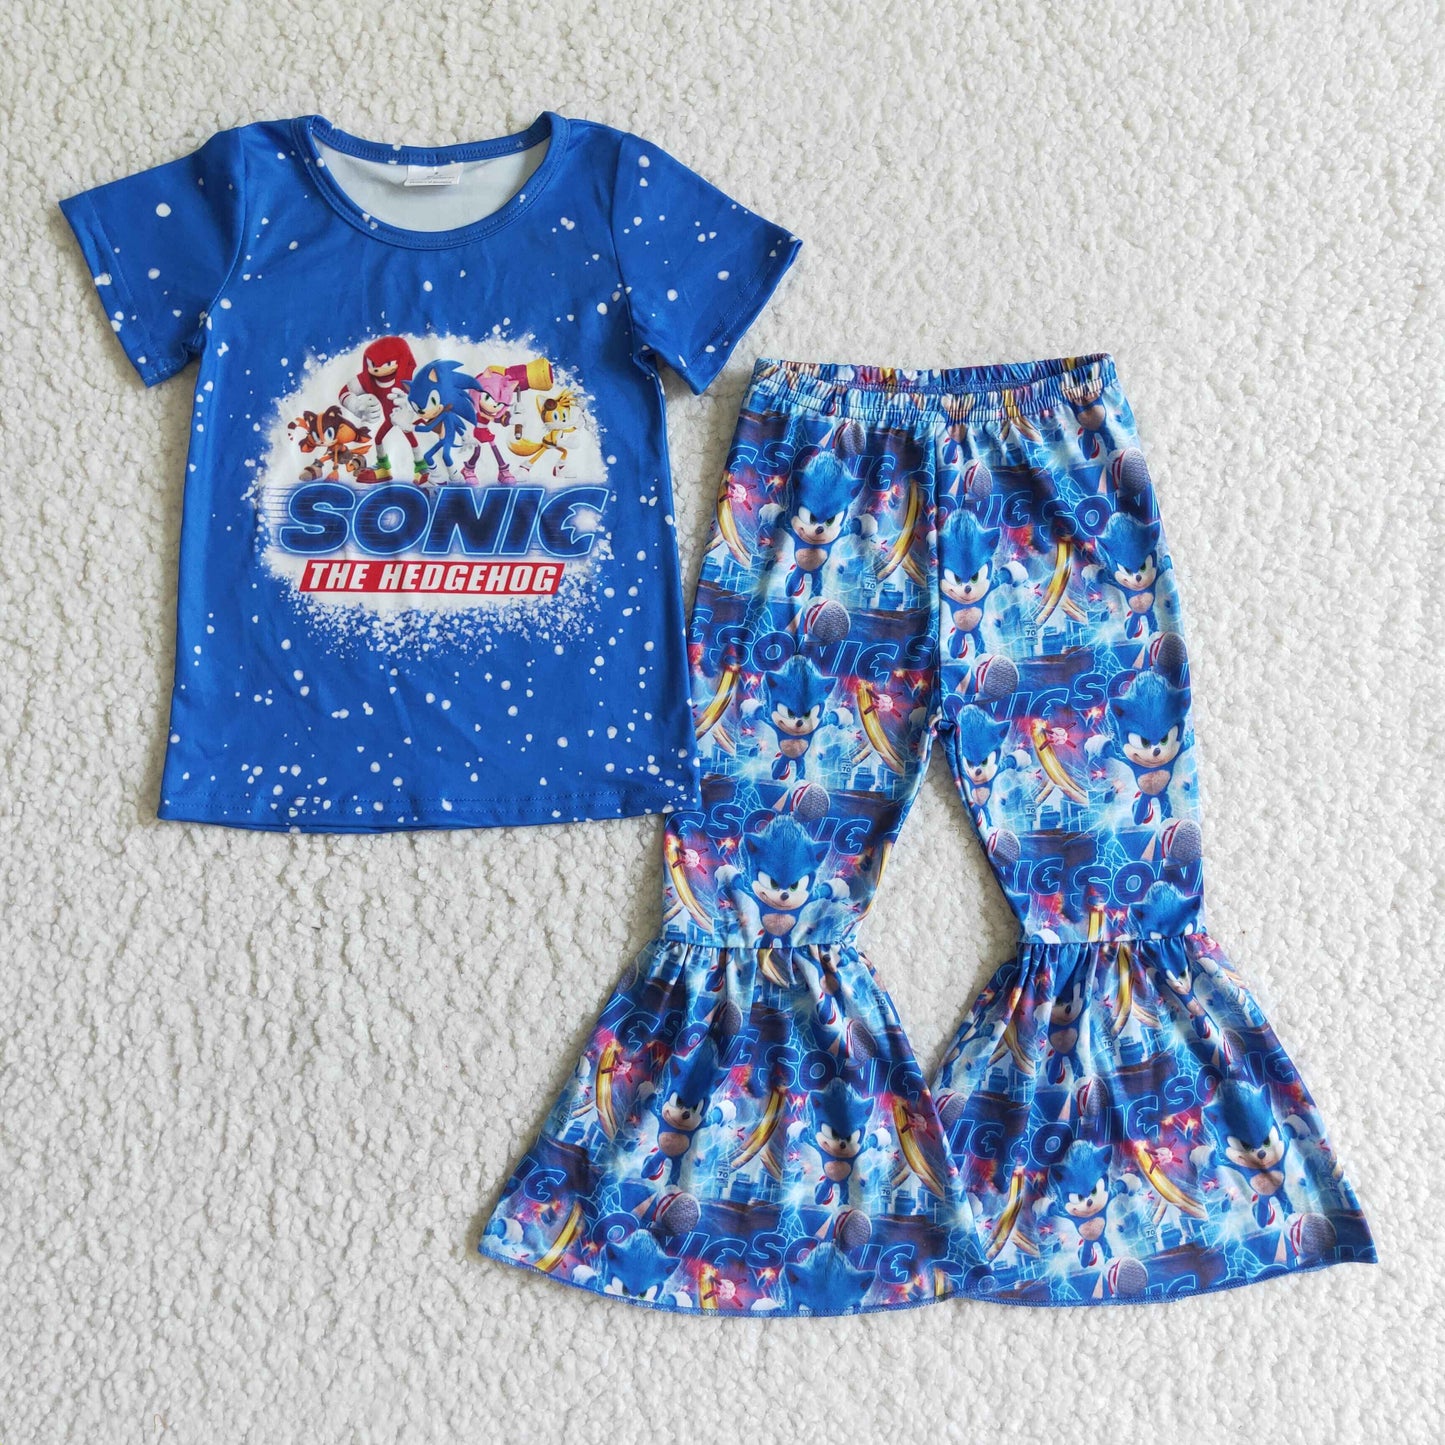 Blue hedgehog kids girls clothing set